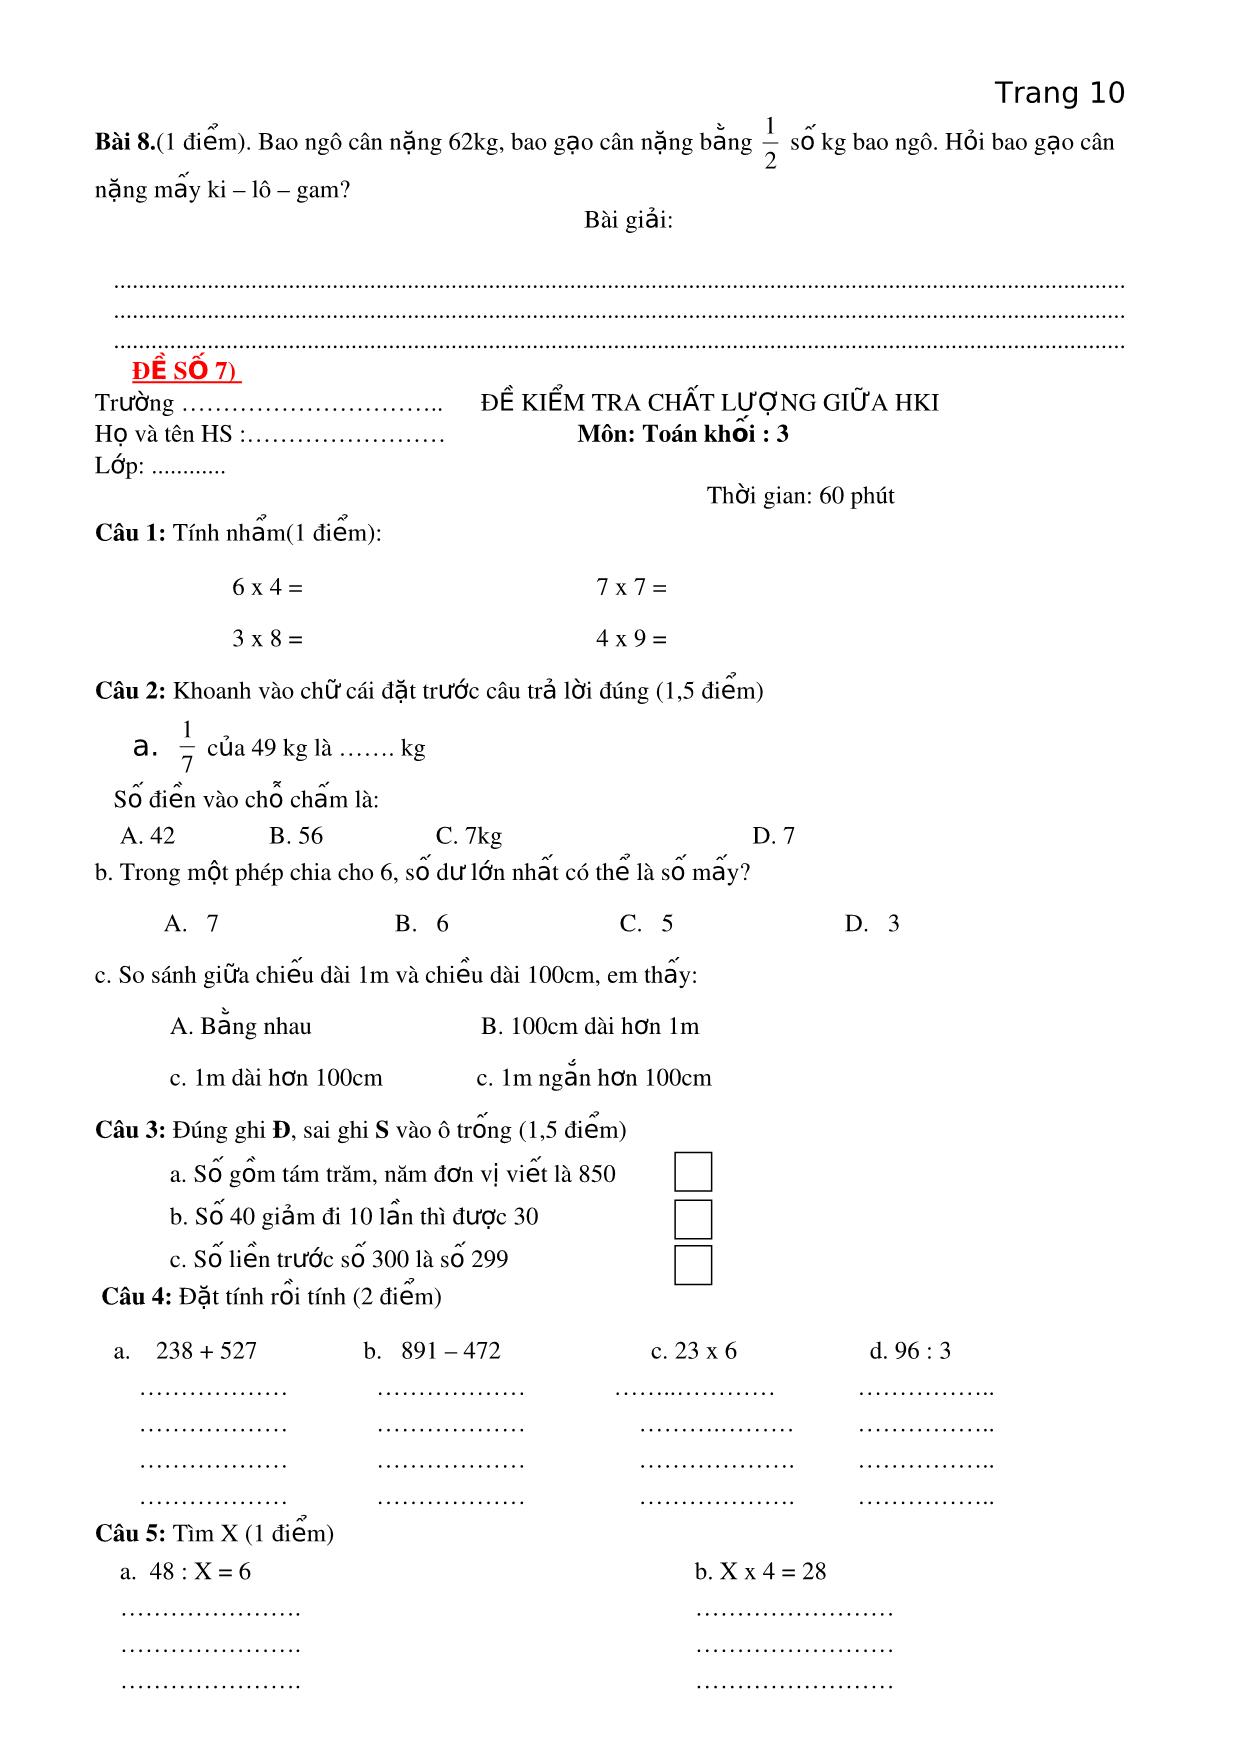 Một số đề ôn kiểm tra giữa học kì I - Môn Toán lớp 3 trang 10